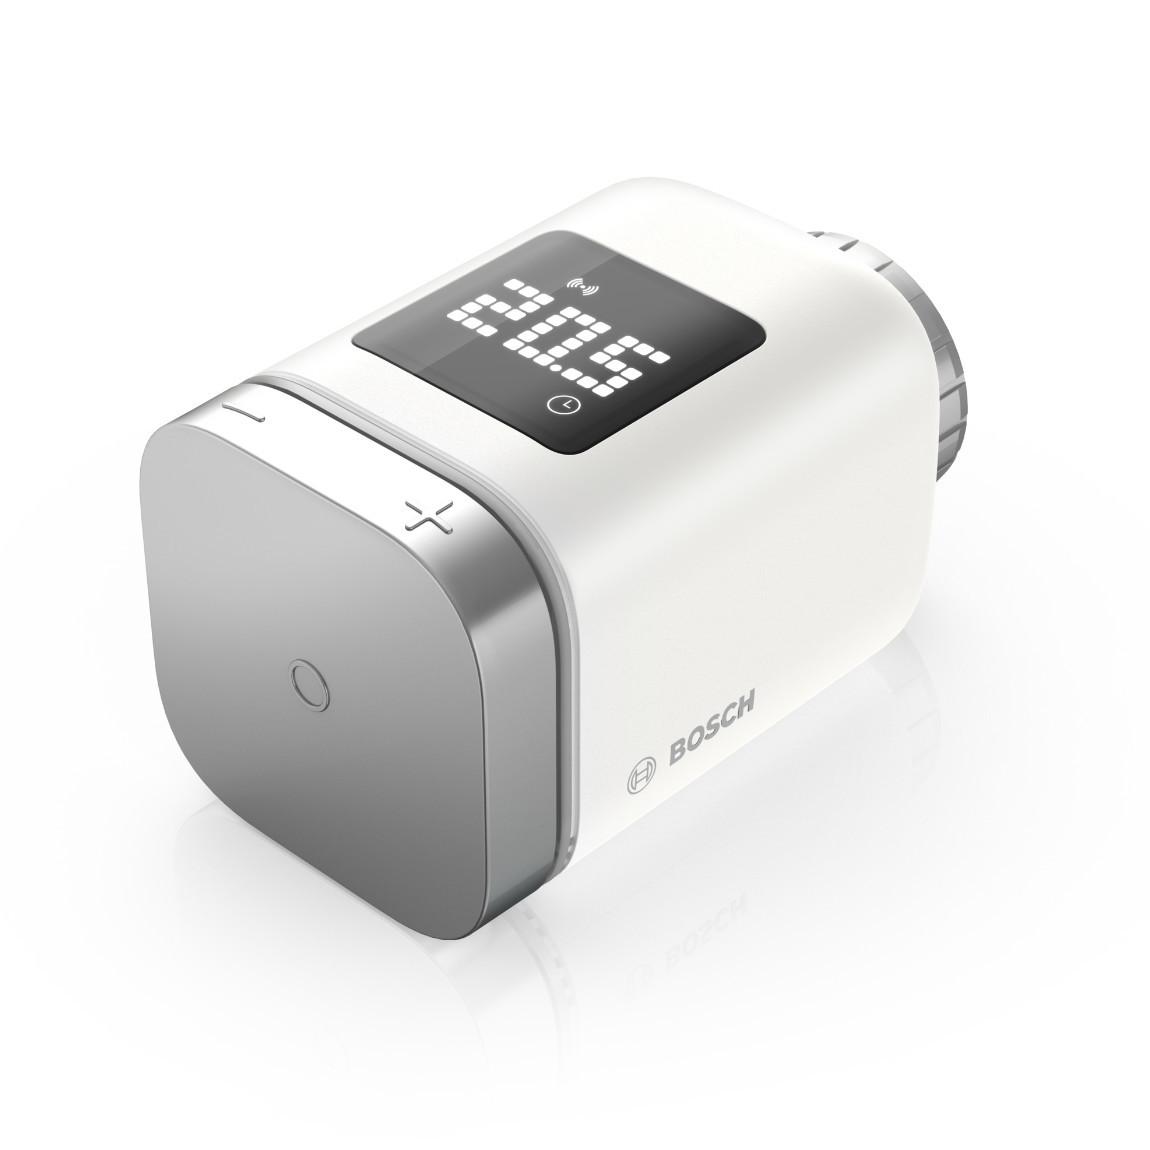 Bosch Smart Home - Starter Set Heizung II mit 3 Thermostaten_Thermostat schraeg